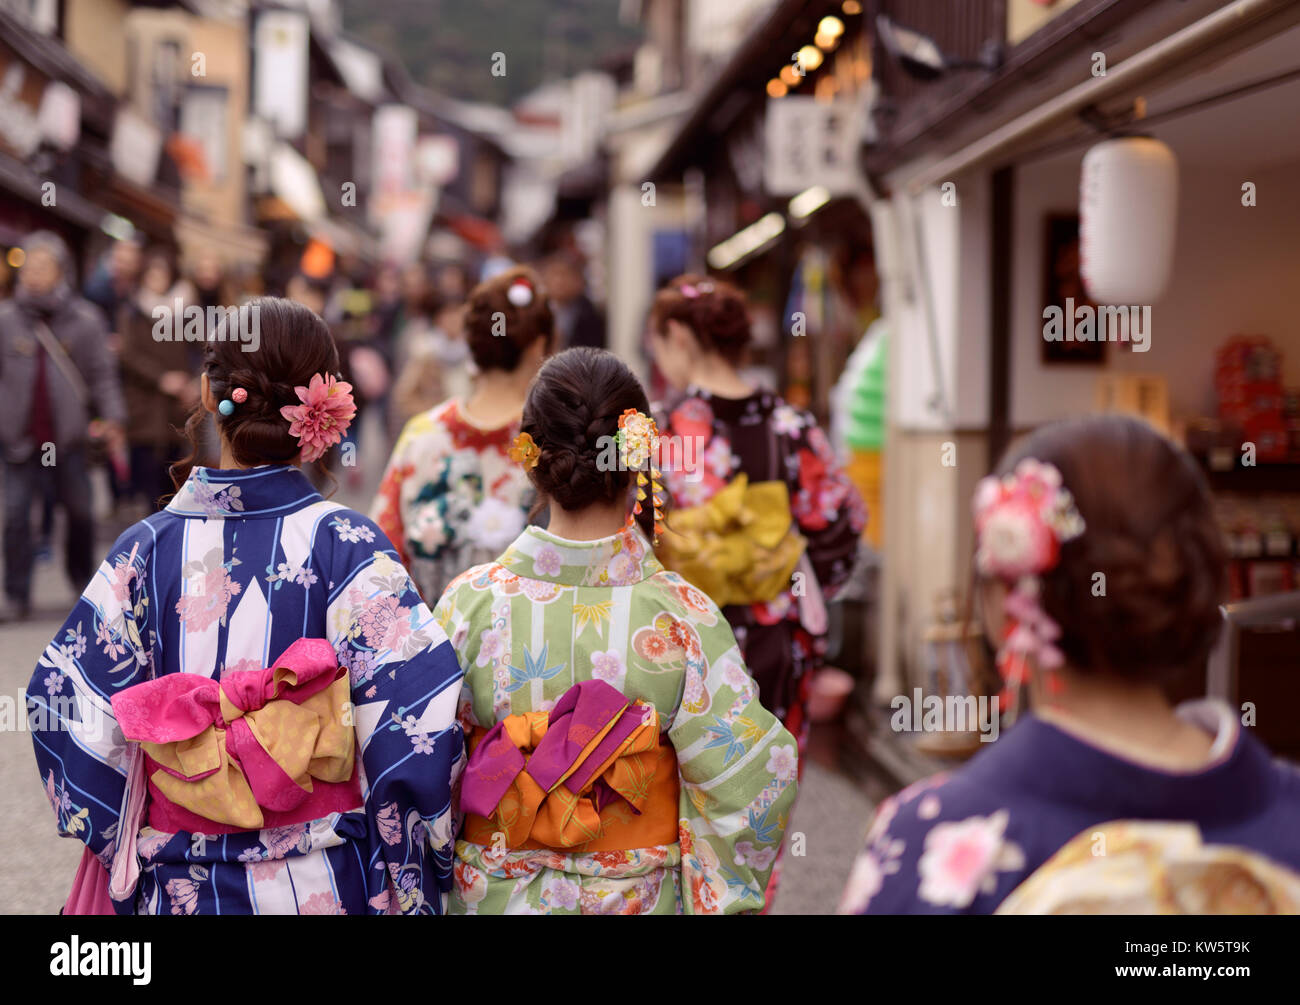 Führerschein und Fingerabdrücke bei MaximImages.com - Mädchen in leuchtenden Yukata Kimonos, deren obi gefesselt ist, als sie die Yasaka dori Street in Kyoto entlang laufen Stockfoto